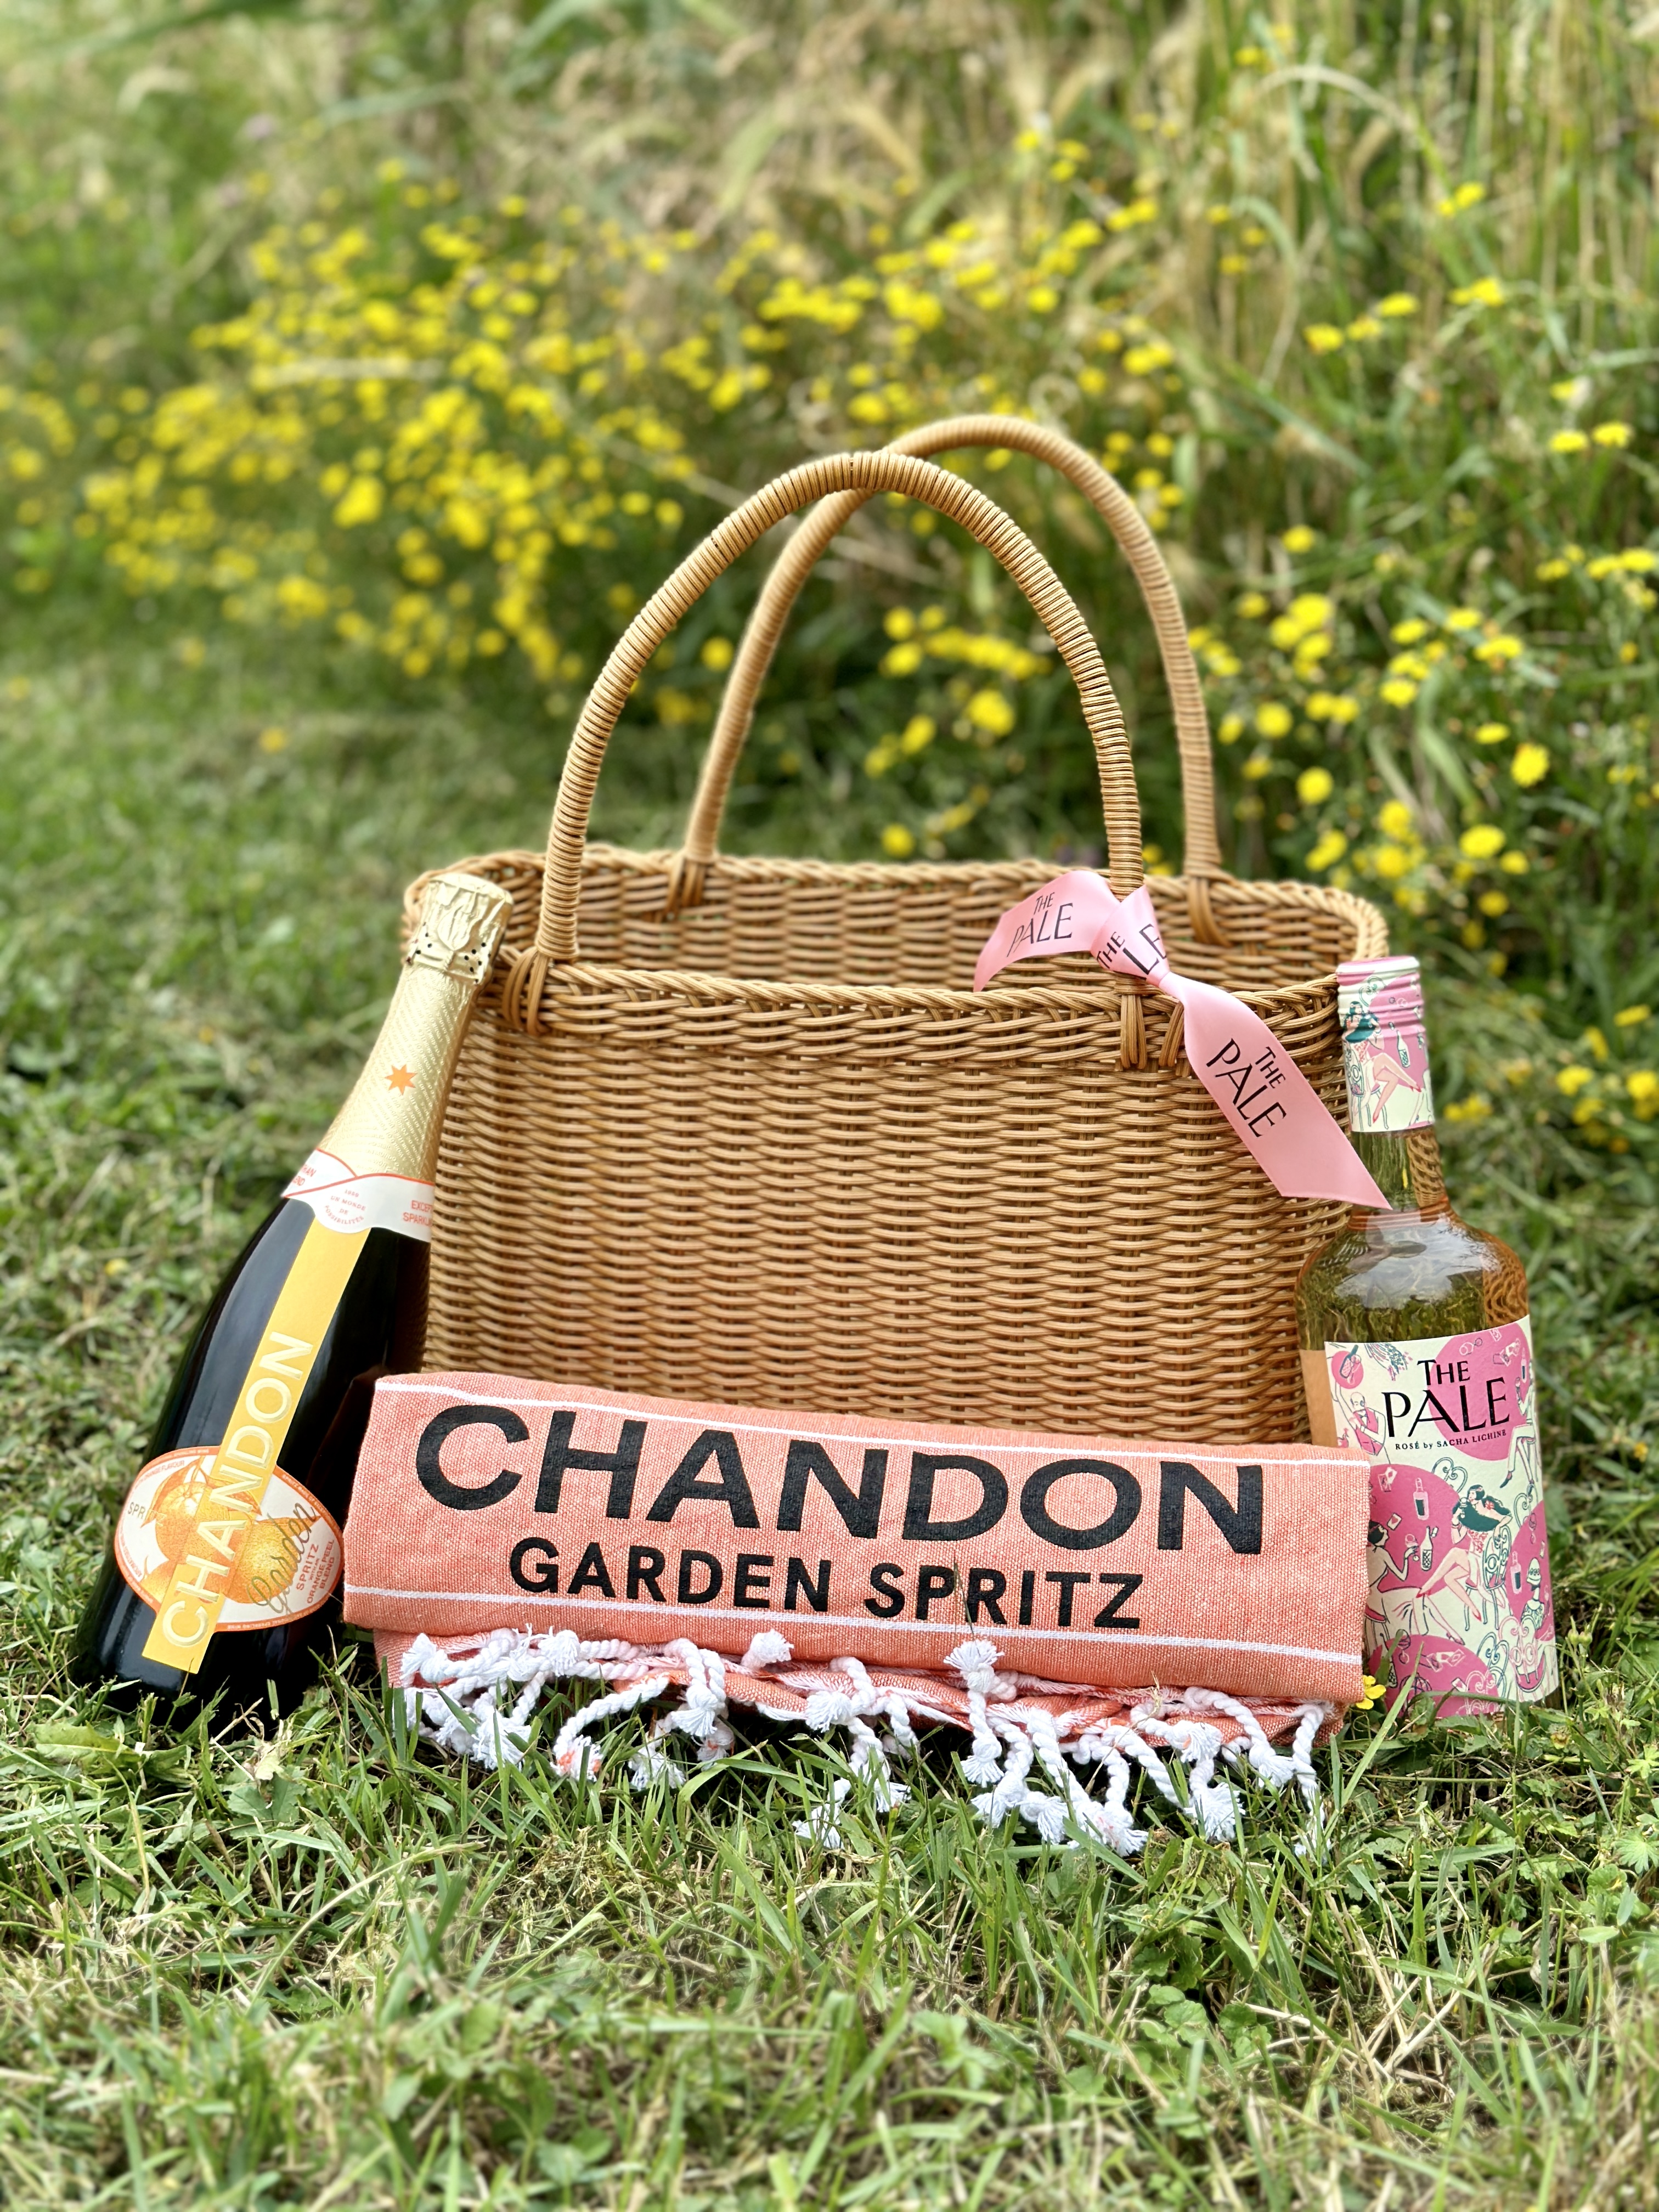 Chandon Garden spritz